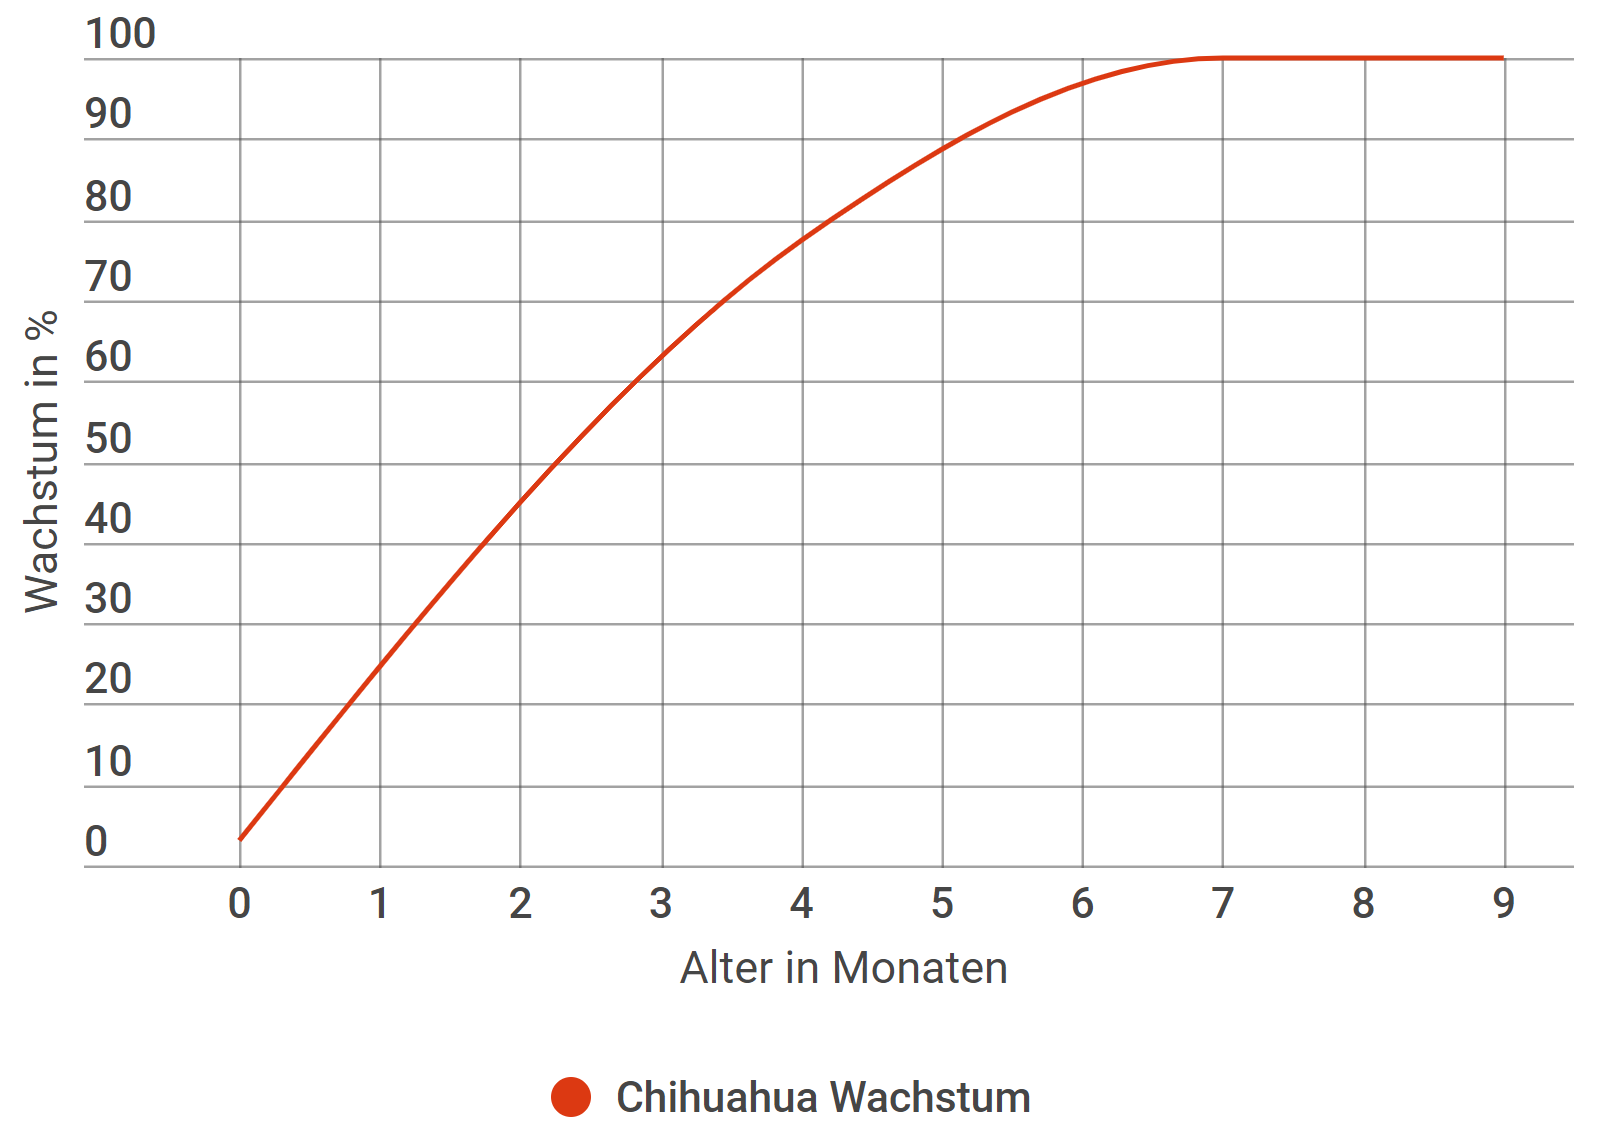 Chihuahua Wachstum in Prozent